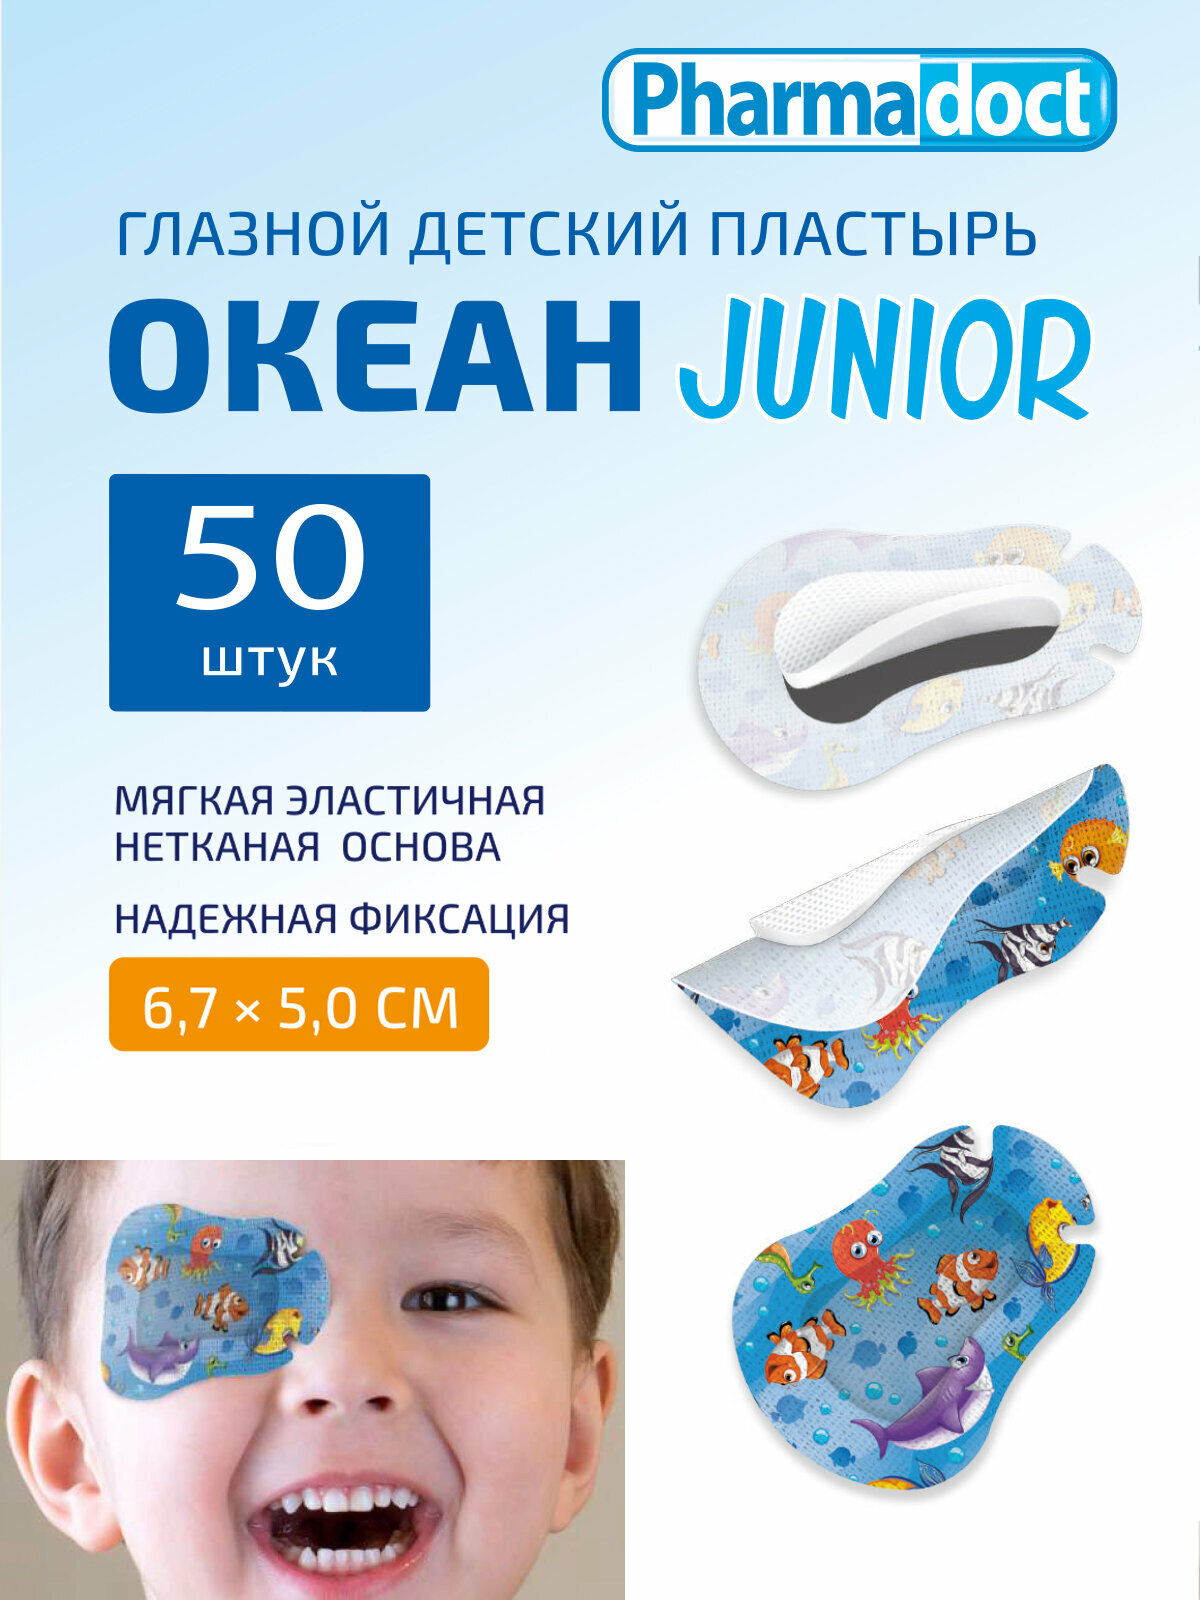 Пластырь глазной детский с рисунком "Океан" Pharmadoct окклюдер для ребенка Junior, 6,7 х 5 см, 50 шт